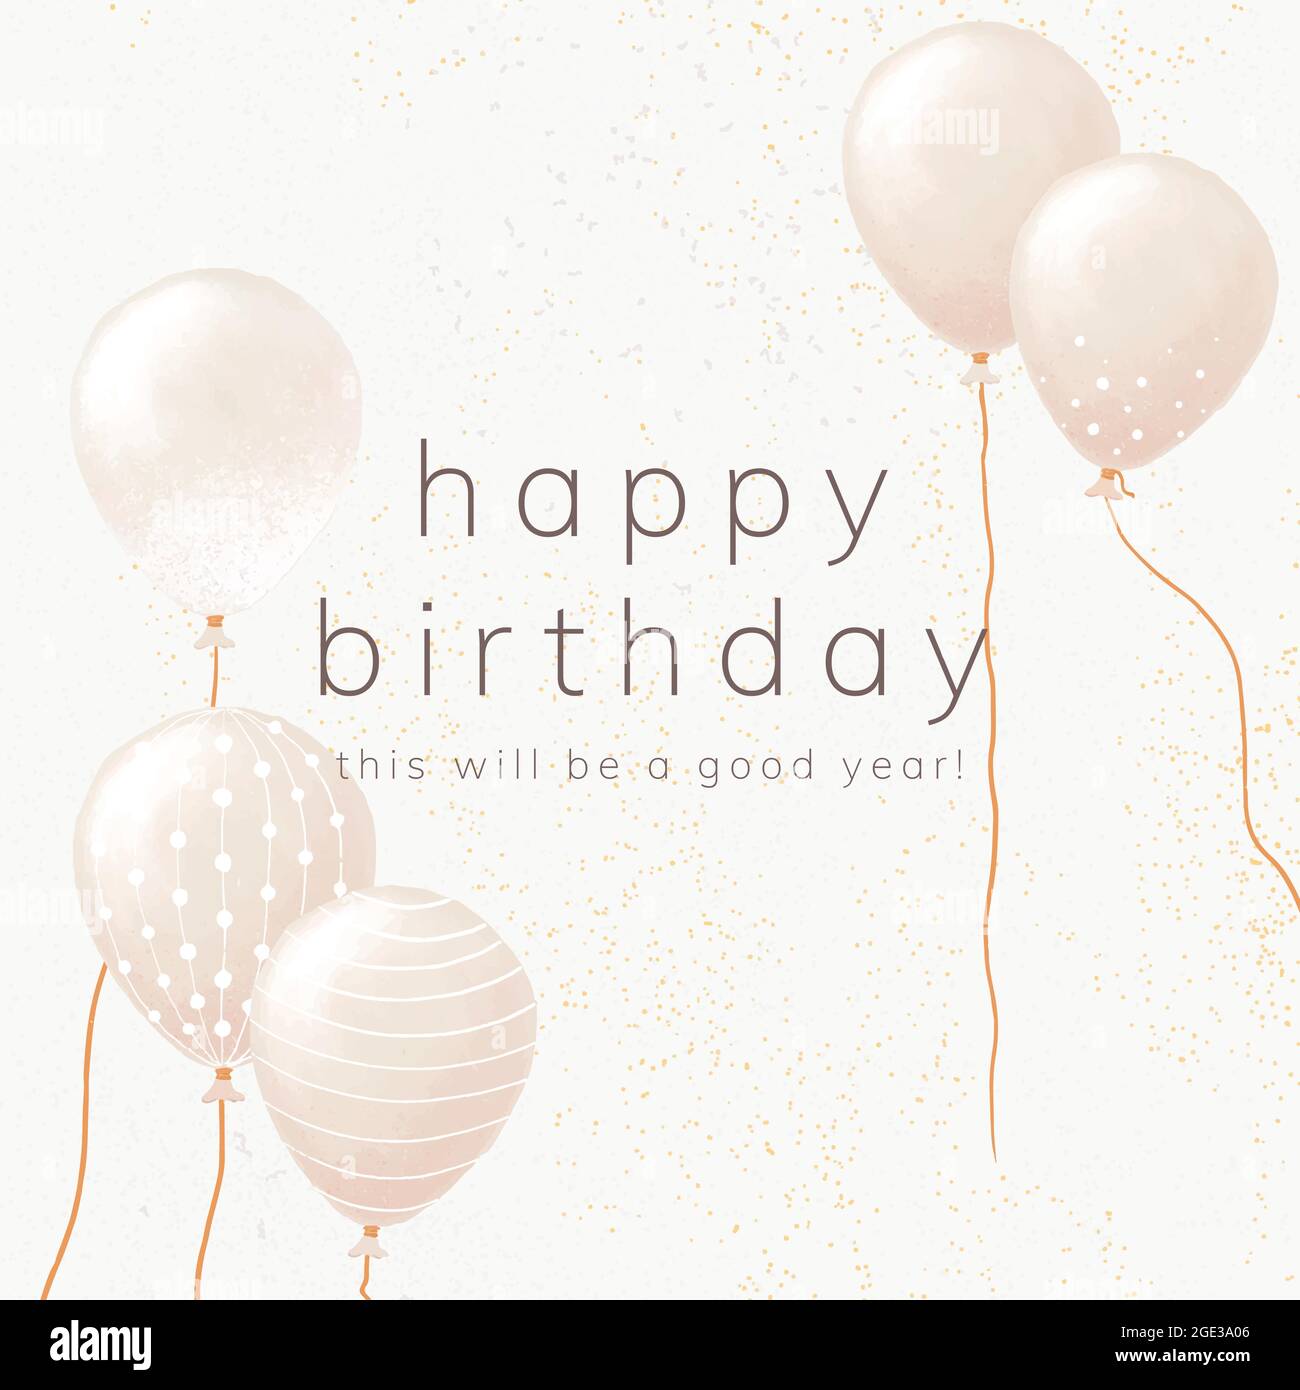 Ballon Geburtstagsgruß Vorlage Vektor in weiß und Gold Ton  Stock-Vektorgrafik - Alamy